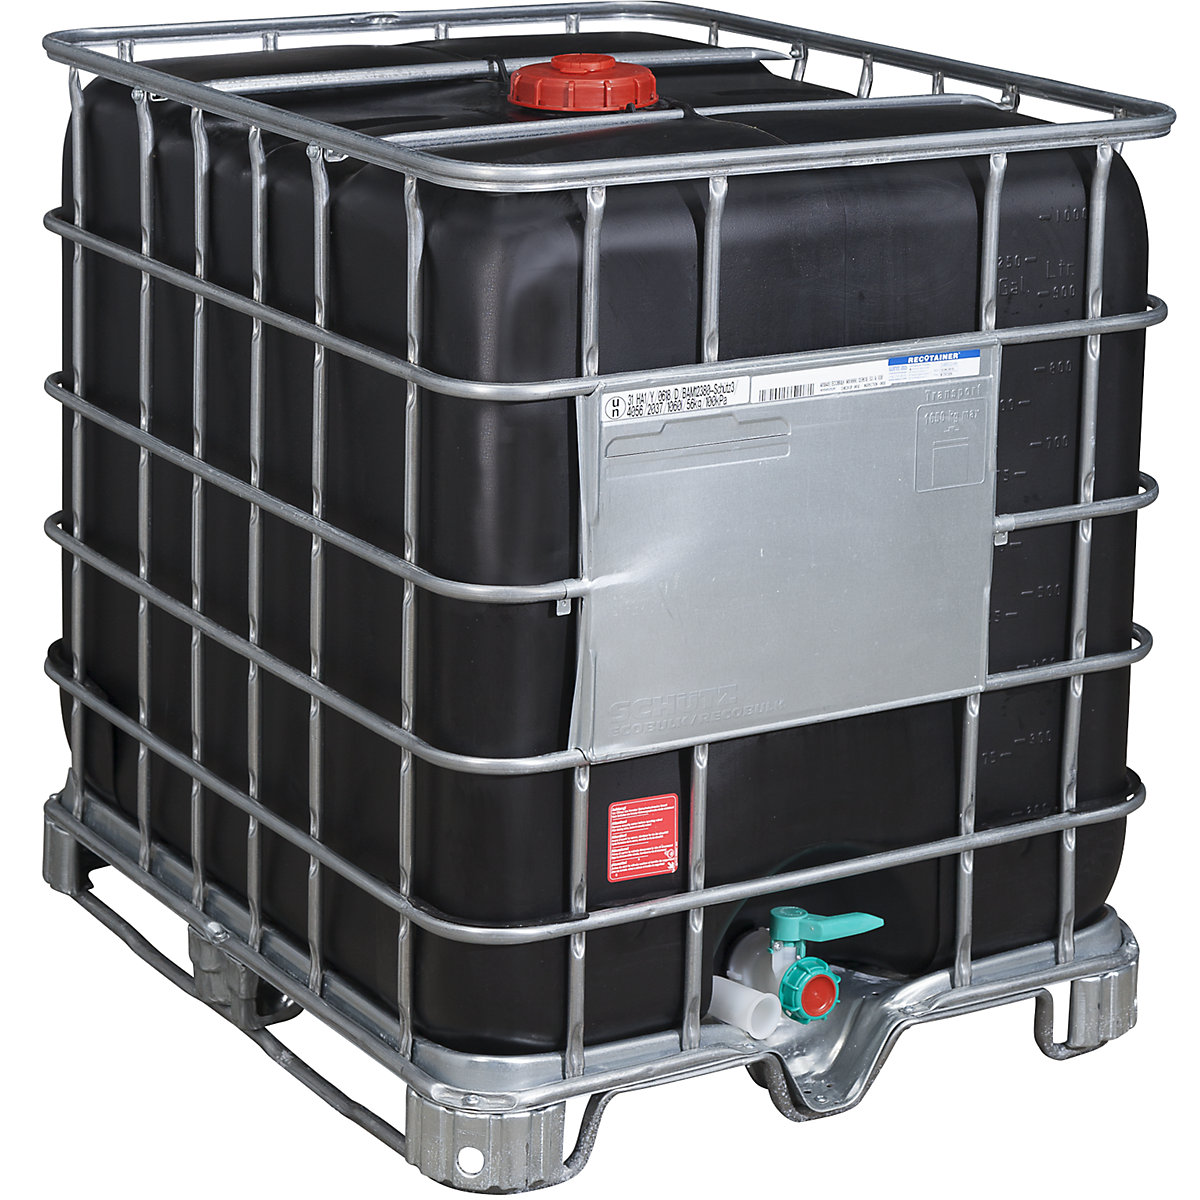 IBC kontejner RECOBULK s UV zaštitom i UN dozvolom, volumen 1000 l, od palete čeličnih kliznika, nazivni promjer otvora 150 mm / nazivni promjer izlaza 50 mm